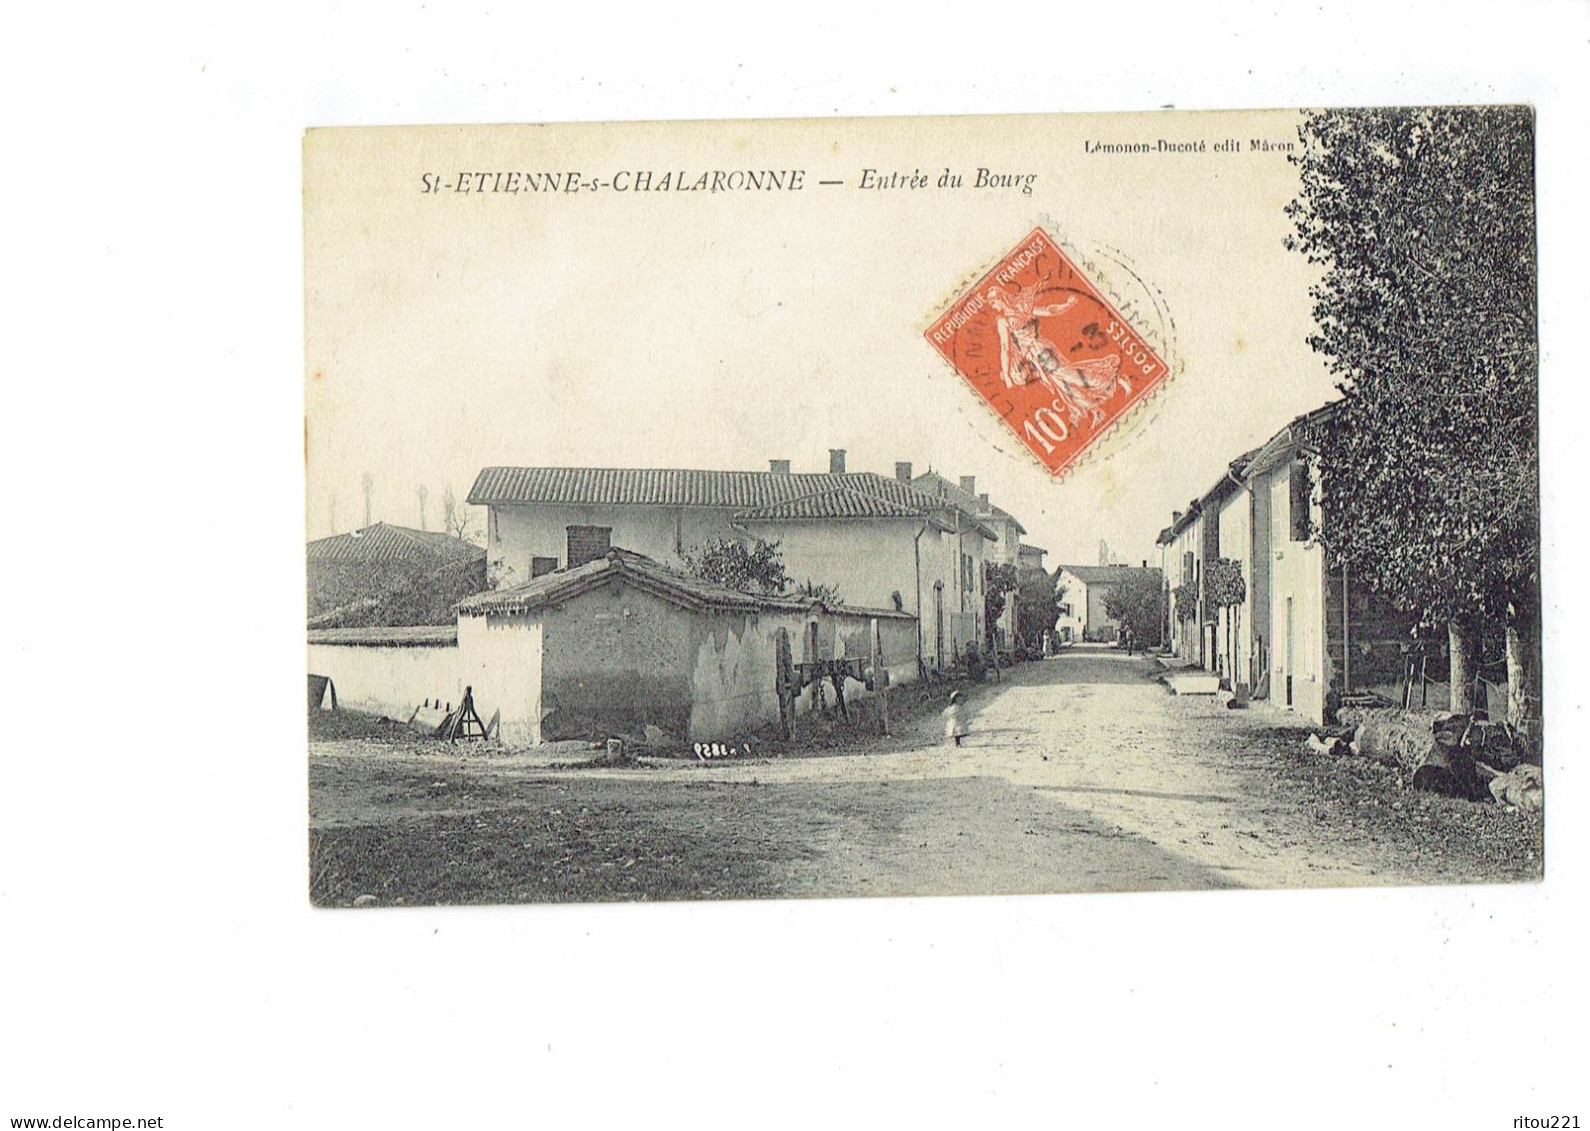 Cpa - 01 - St- Etienne Sur Chalaronne - Entrée Du Bourg - 1911 - Lemonon Ducoté - Châtillon-sur-Chalaronne